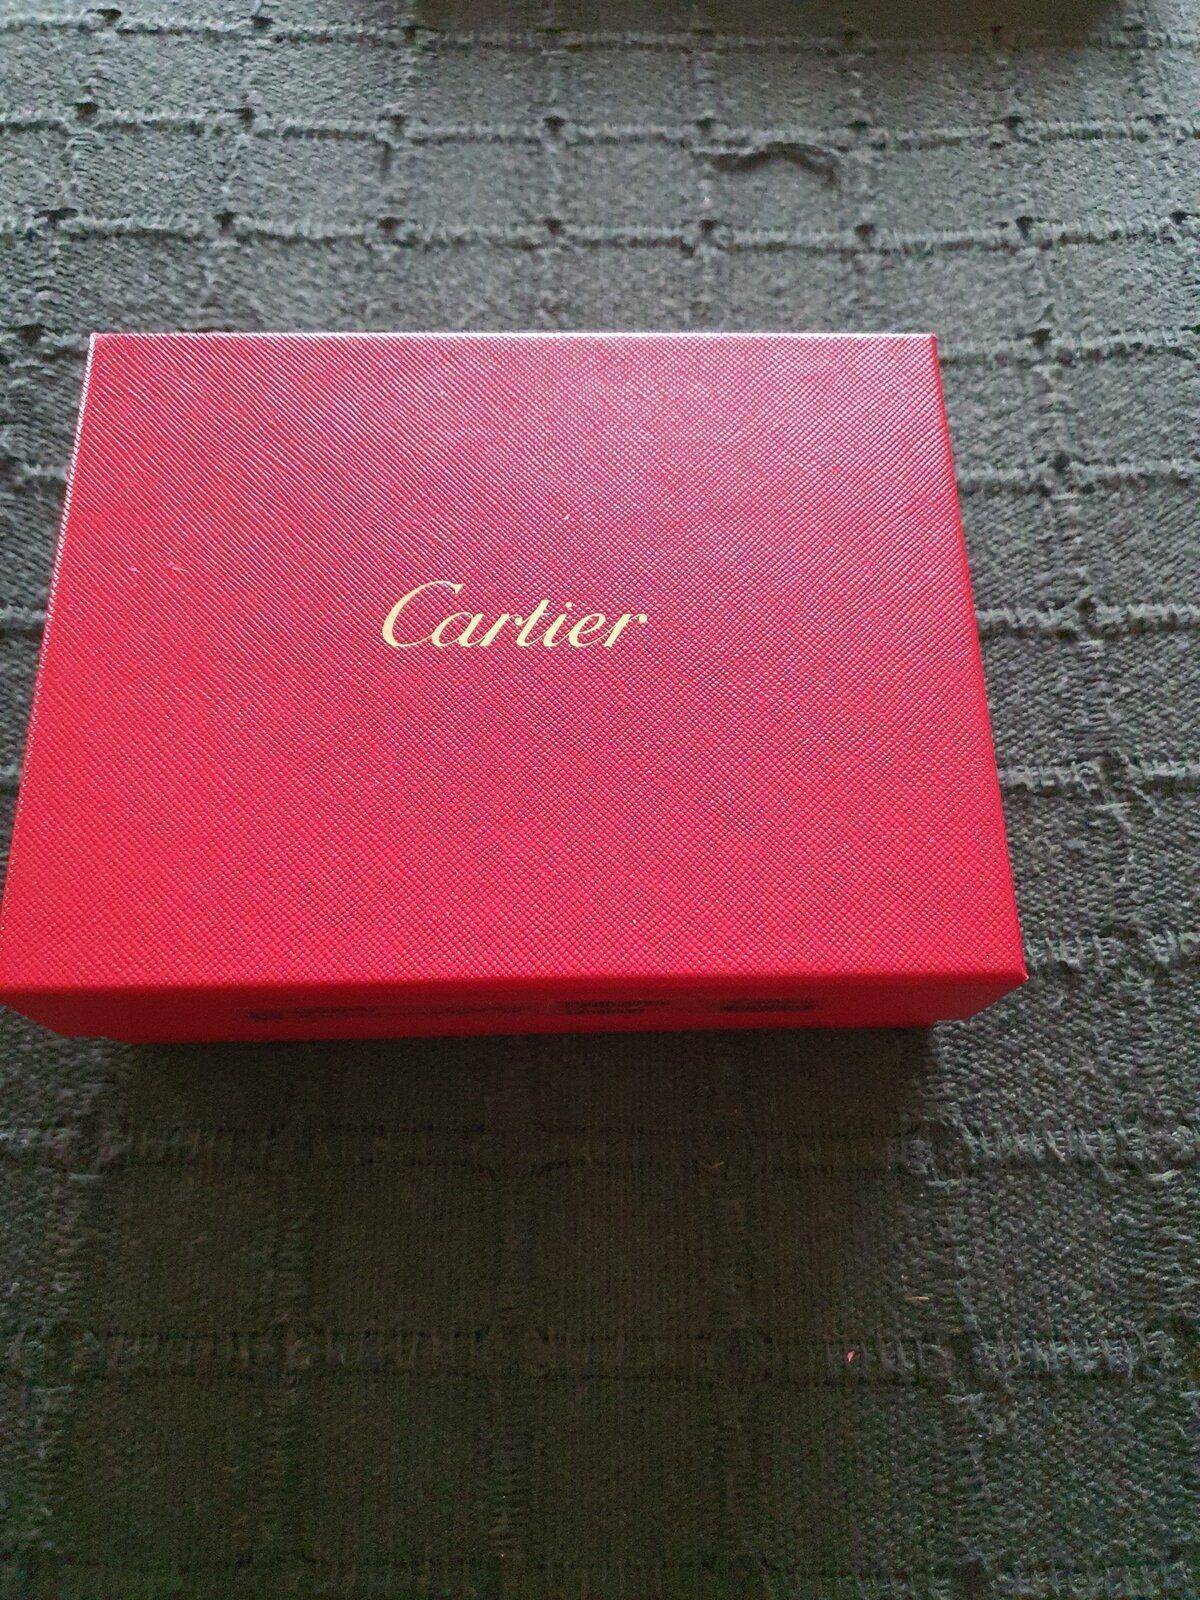 Cartera Cartier hombre | Relojes Especiales, EL foro de relojes